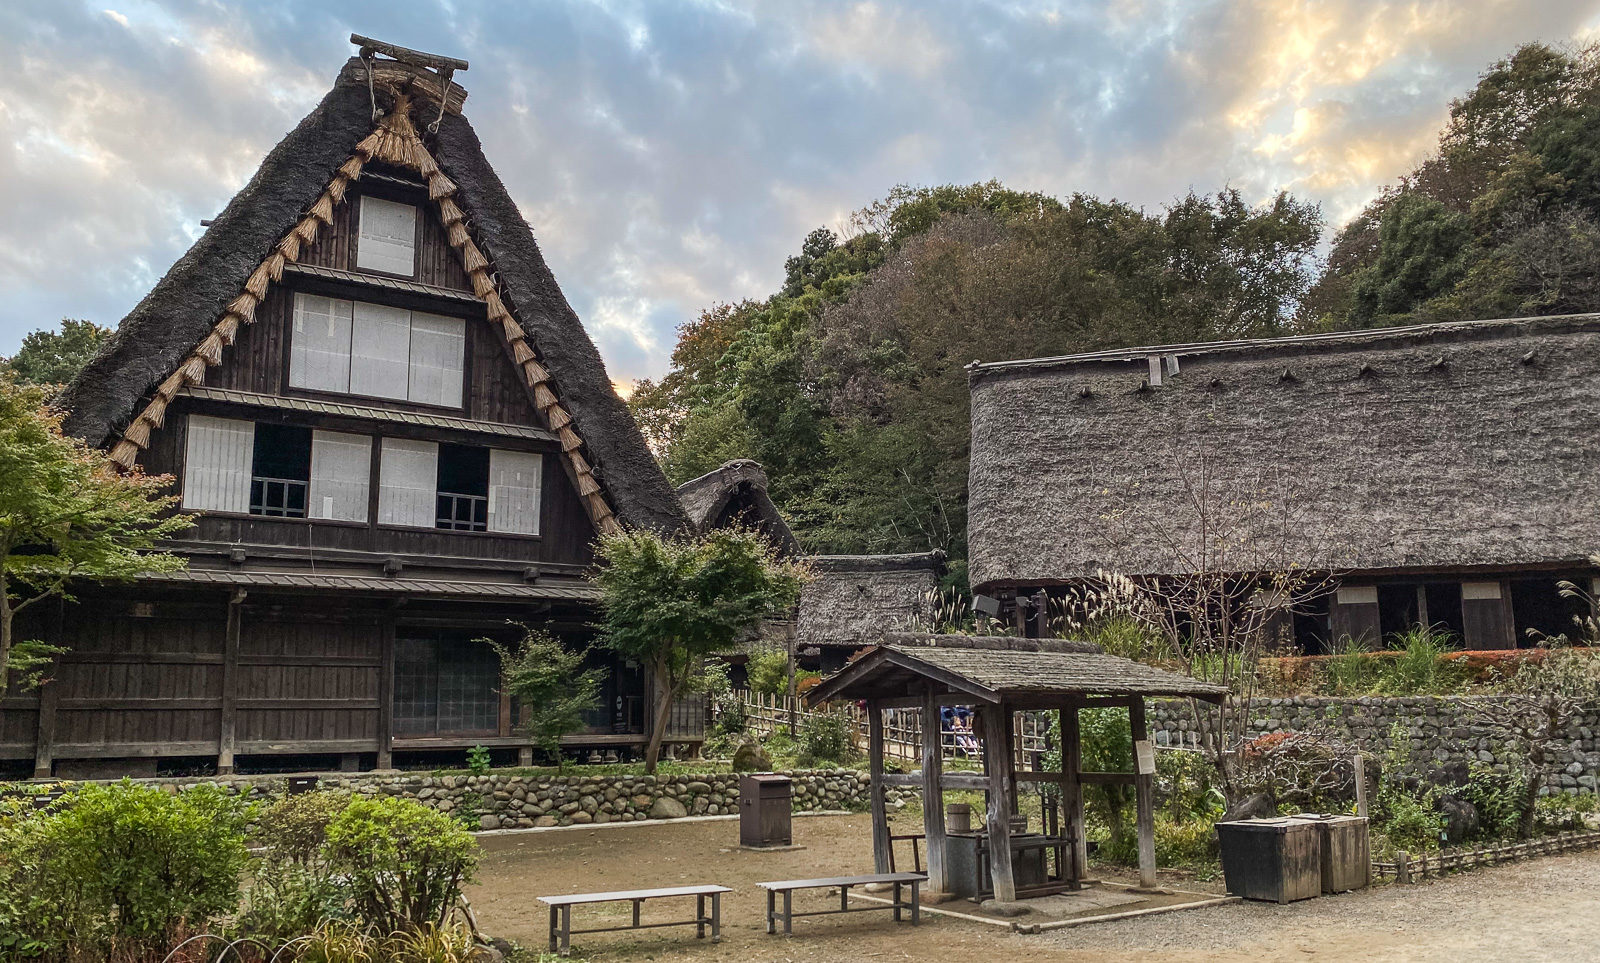 Νιχόν Μινκαέν, ένα υπαίθριο μουσείο με παραδοσιακά κτήρια της Ιαπωνίας